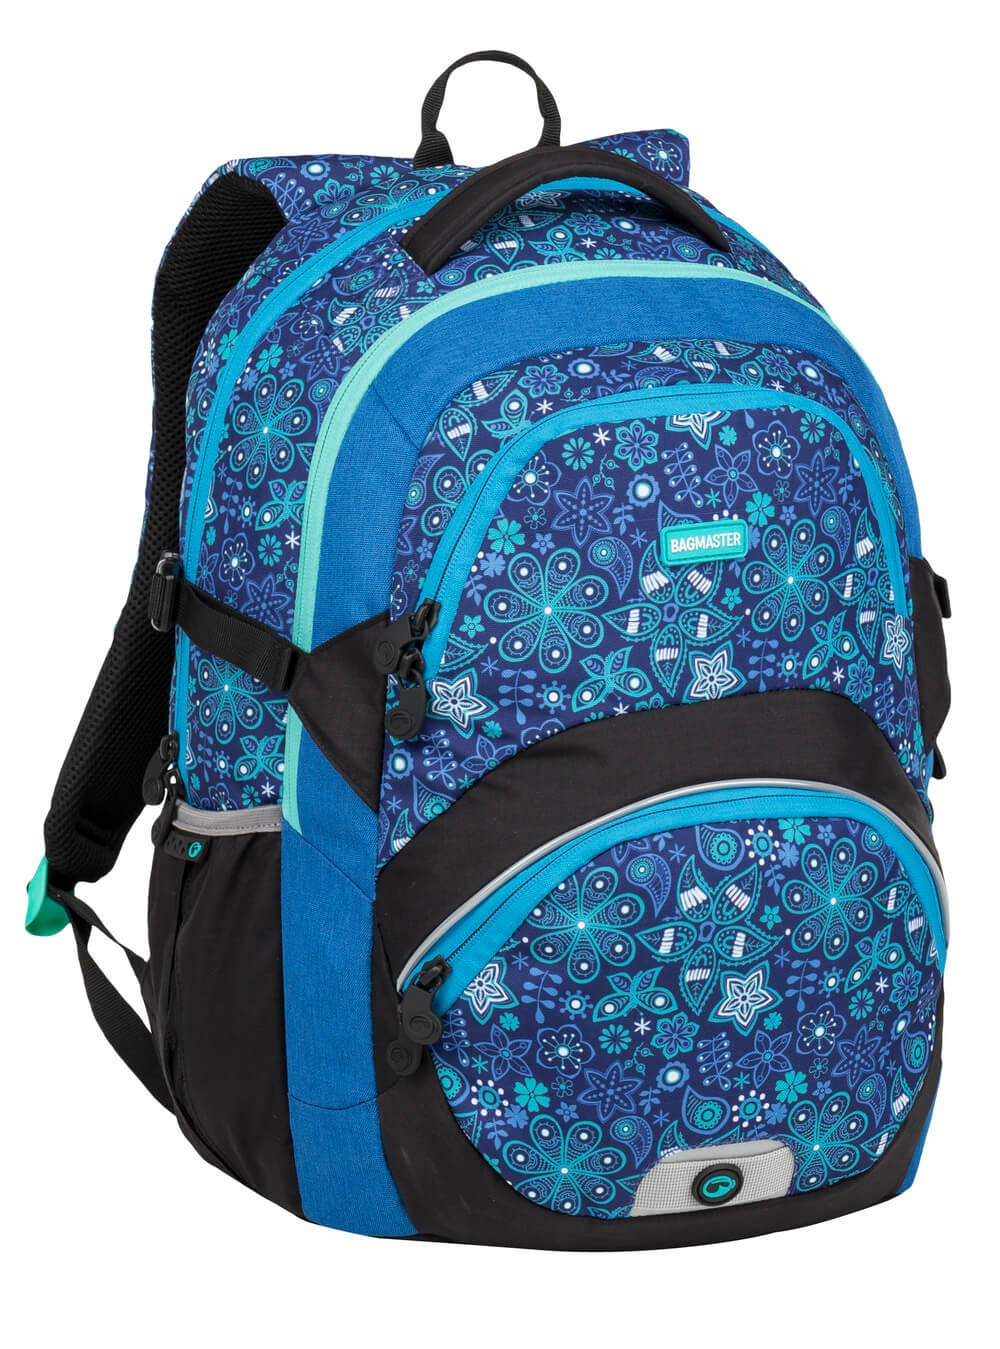 Bagmaster THEORY 9 C školní batoh - modrý s květinami